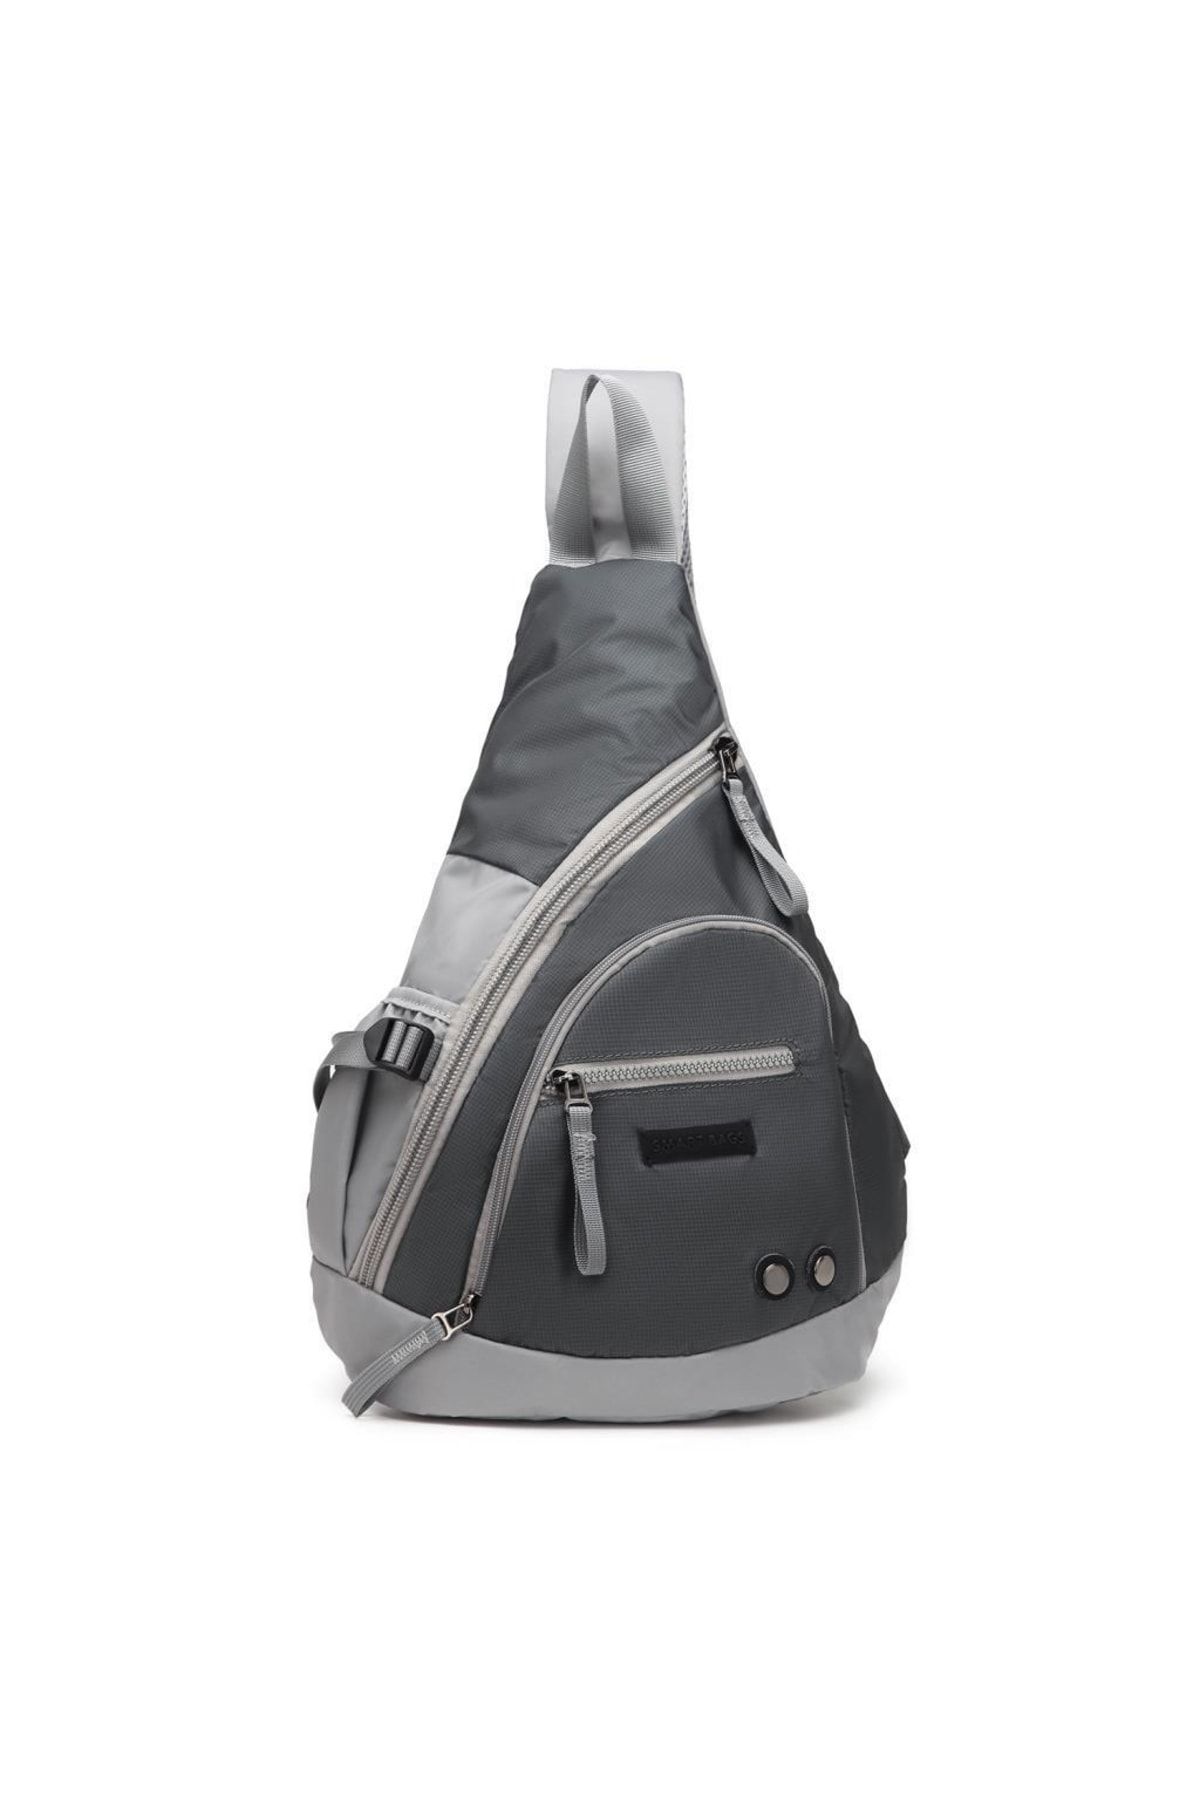 Smart Bags Ultra Hafif Seri Uniseks Bodybag Sırt Çantası 8637